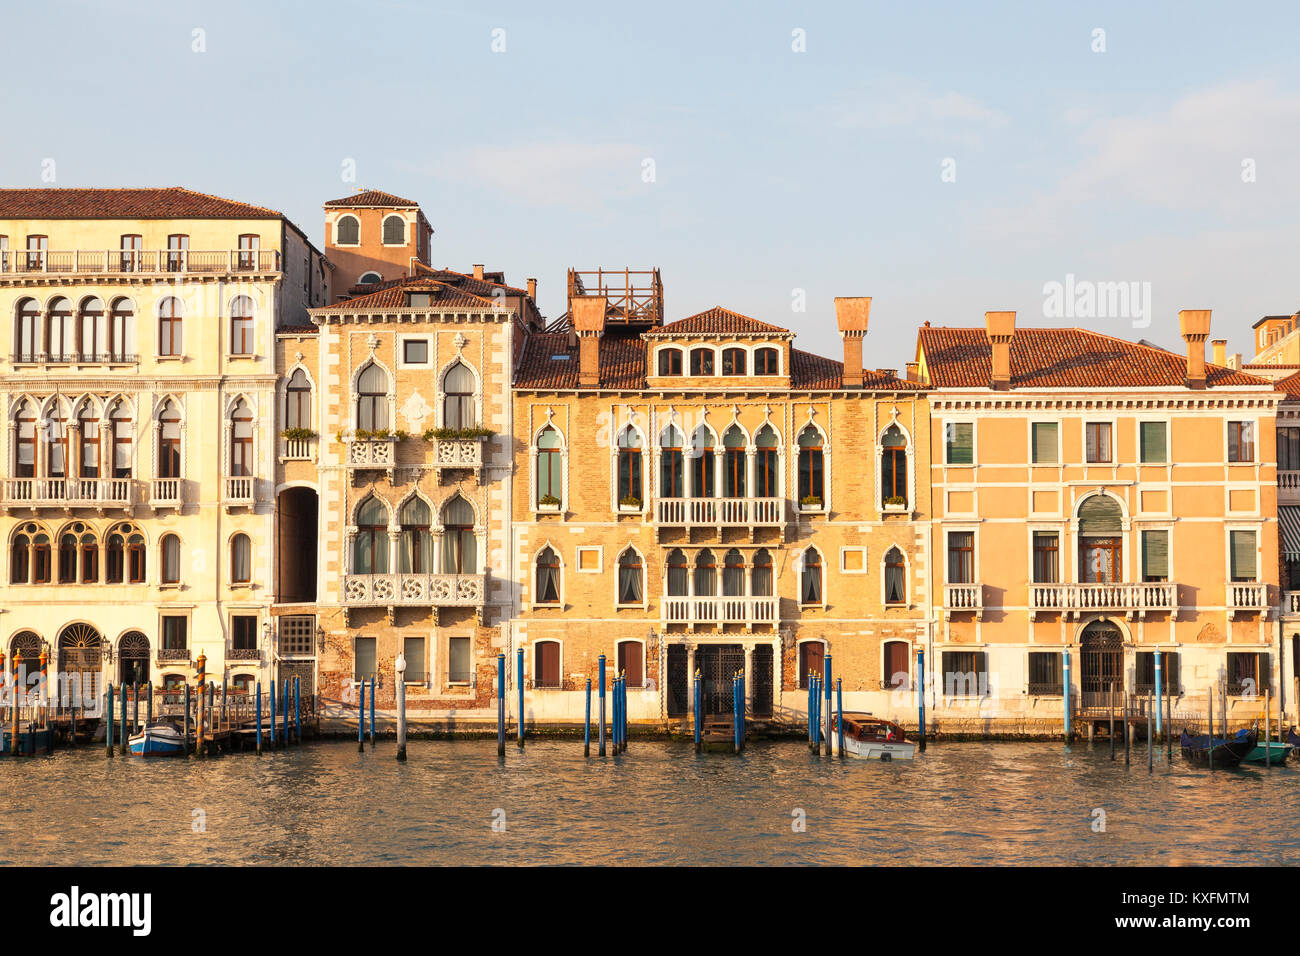 Sonnenuntergang am Grand Canal San Marco, Venedig, Italien mit Palazzi Contarini Manolesso, Fasan und Venier Contarini in goldenem Licht Stockfoto